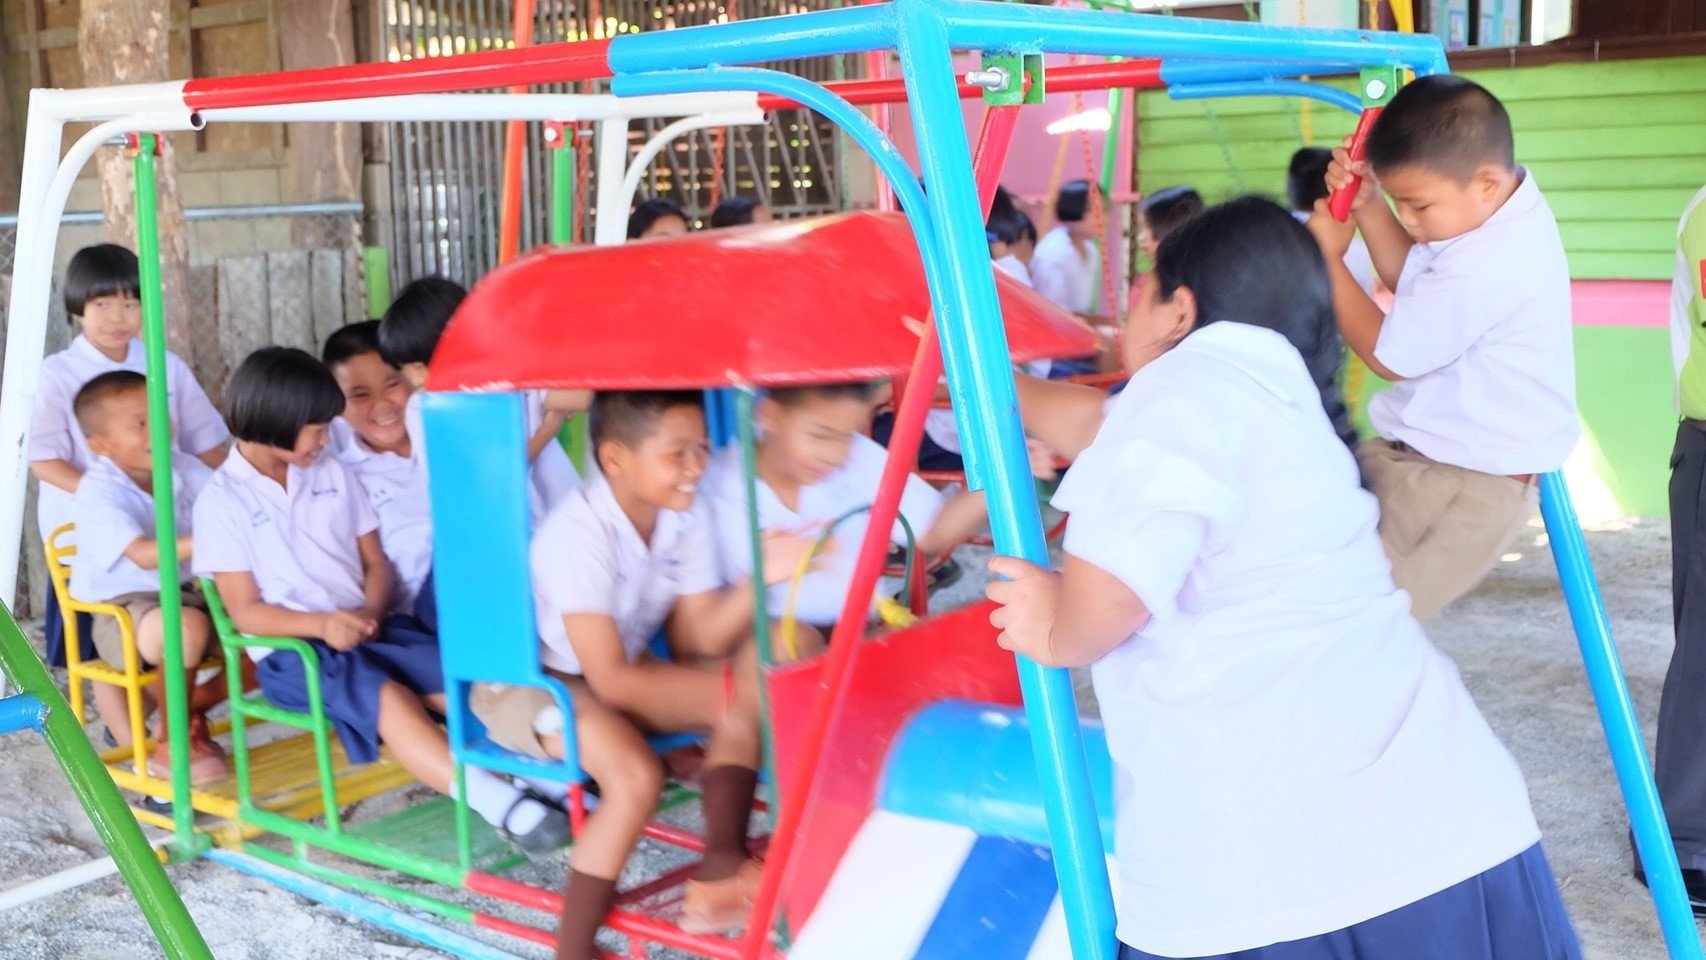 มอบสนามเด็กเล่นให้โรงเรียนสบขาม อำเภอปง จังหวัดพะเยา เมื่อวันที่ 16 พ.ย. 2560